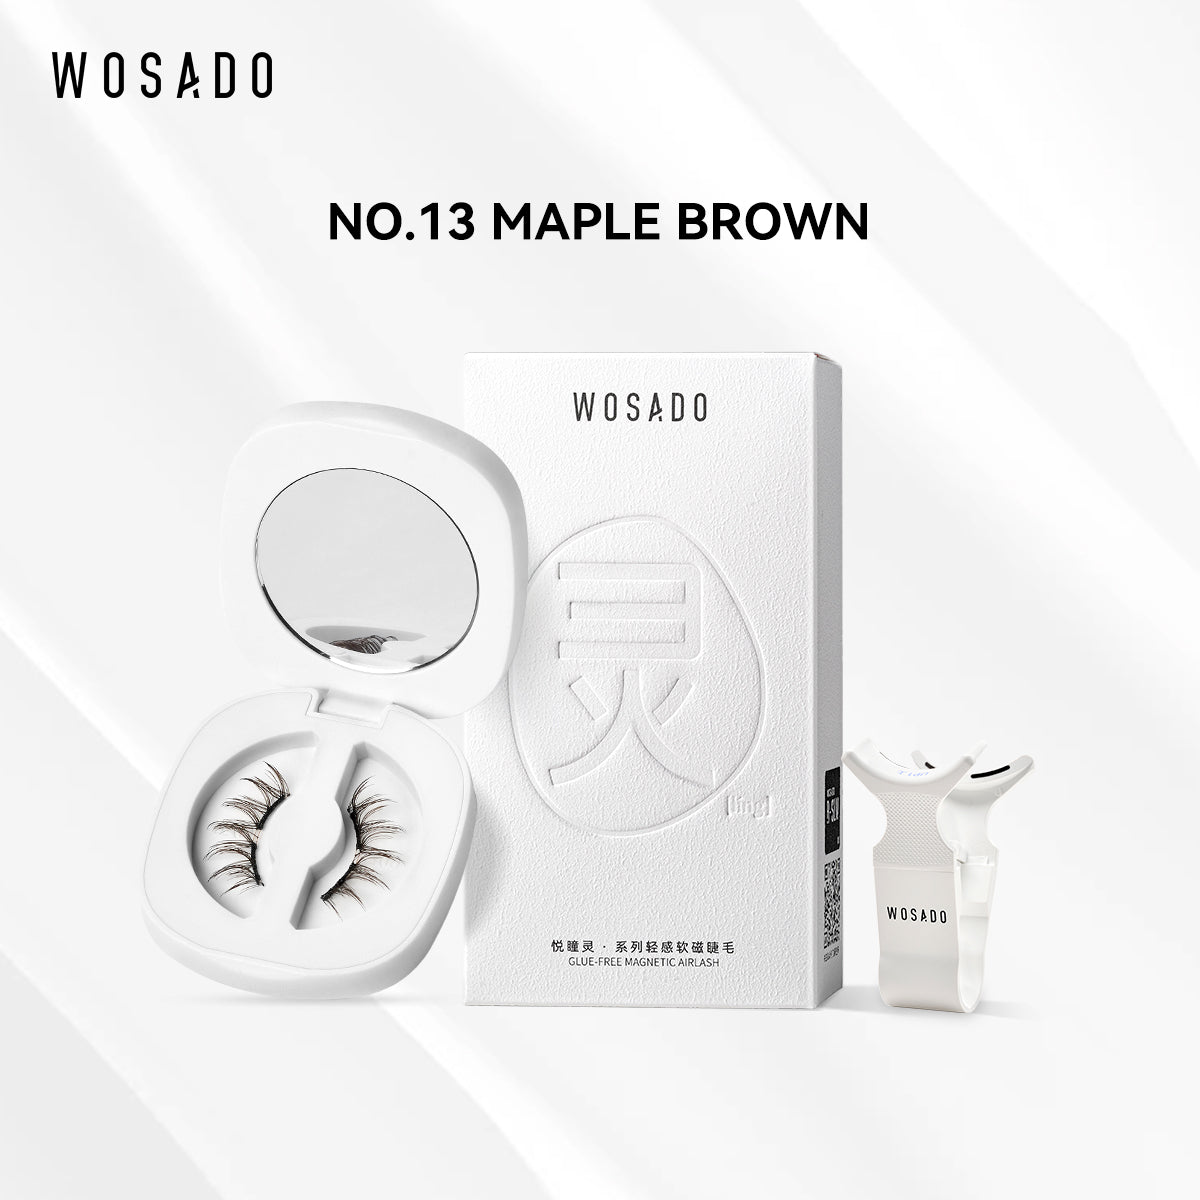 【WOSADO】NO.13 Maple Brown